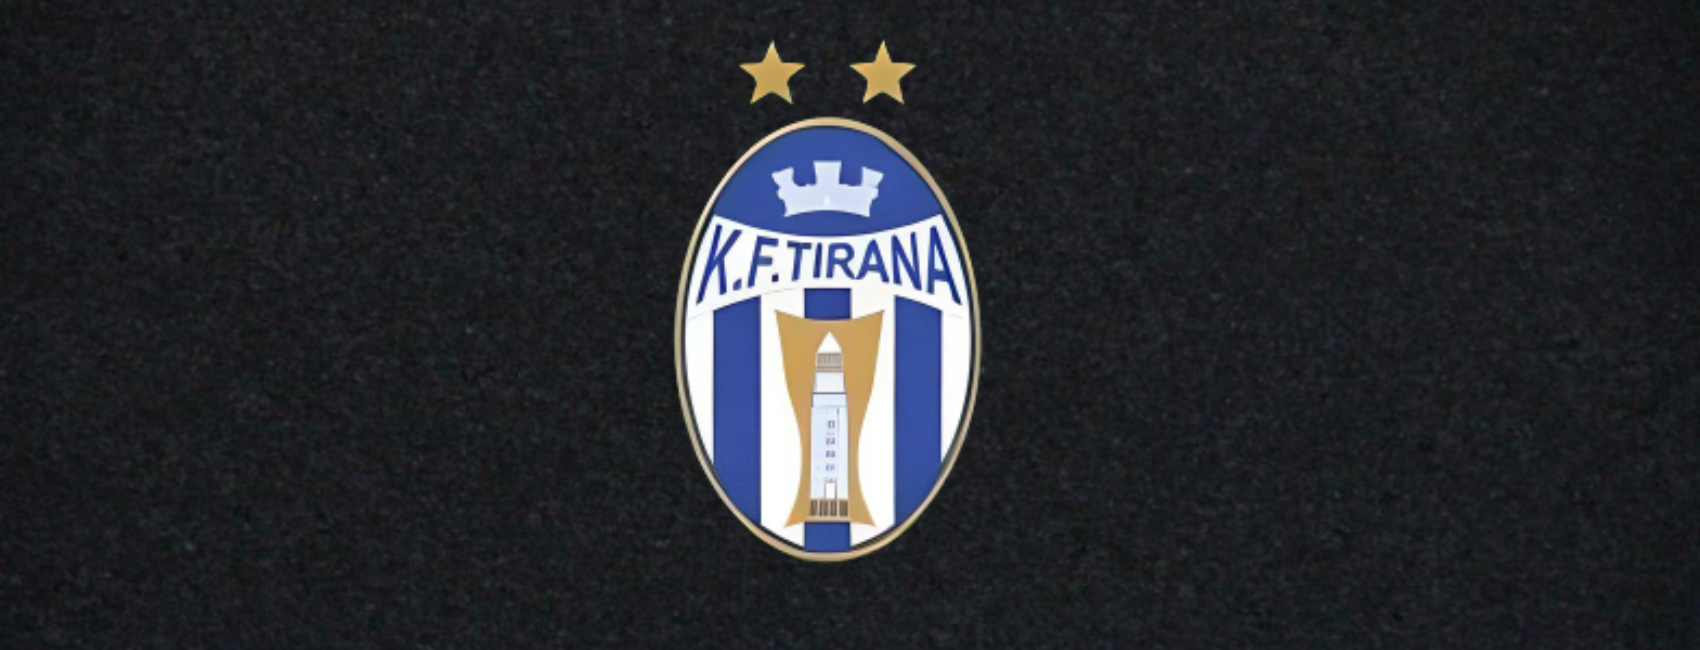 KF TIRANA ALBANIA 